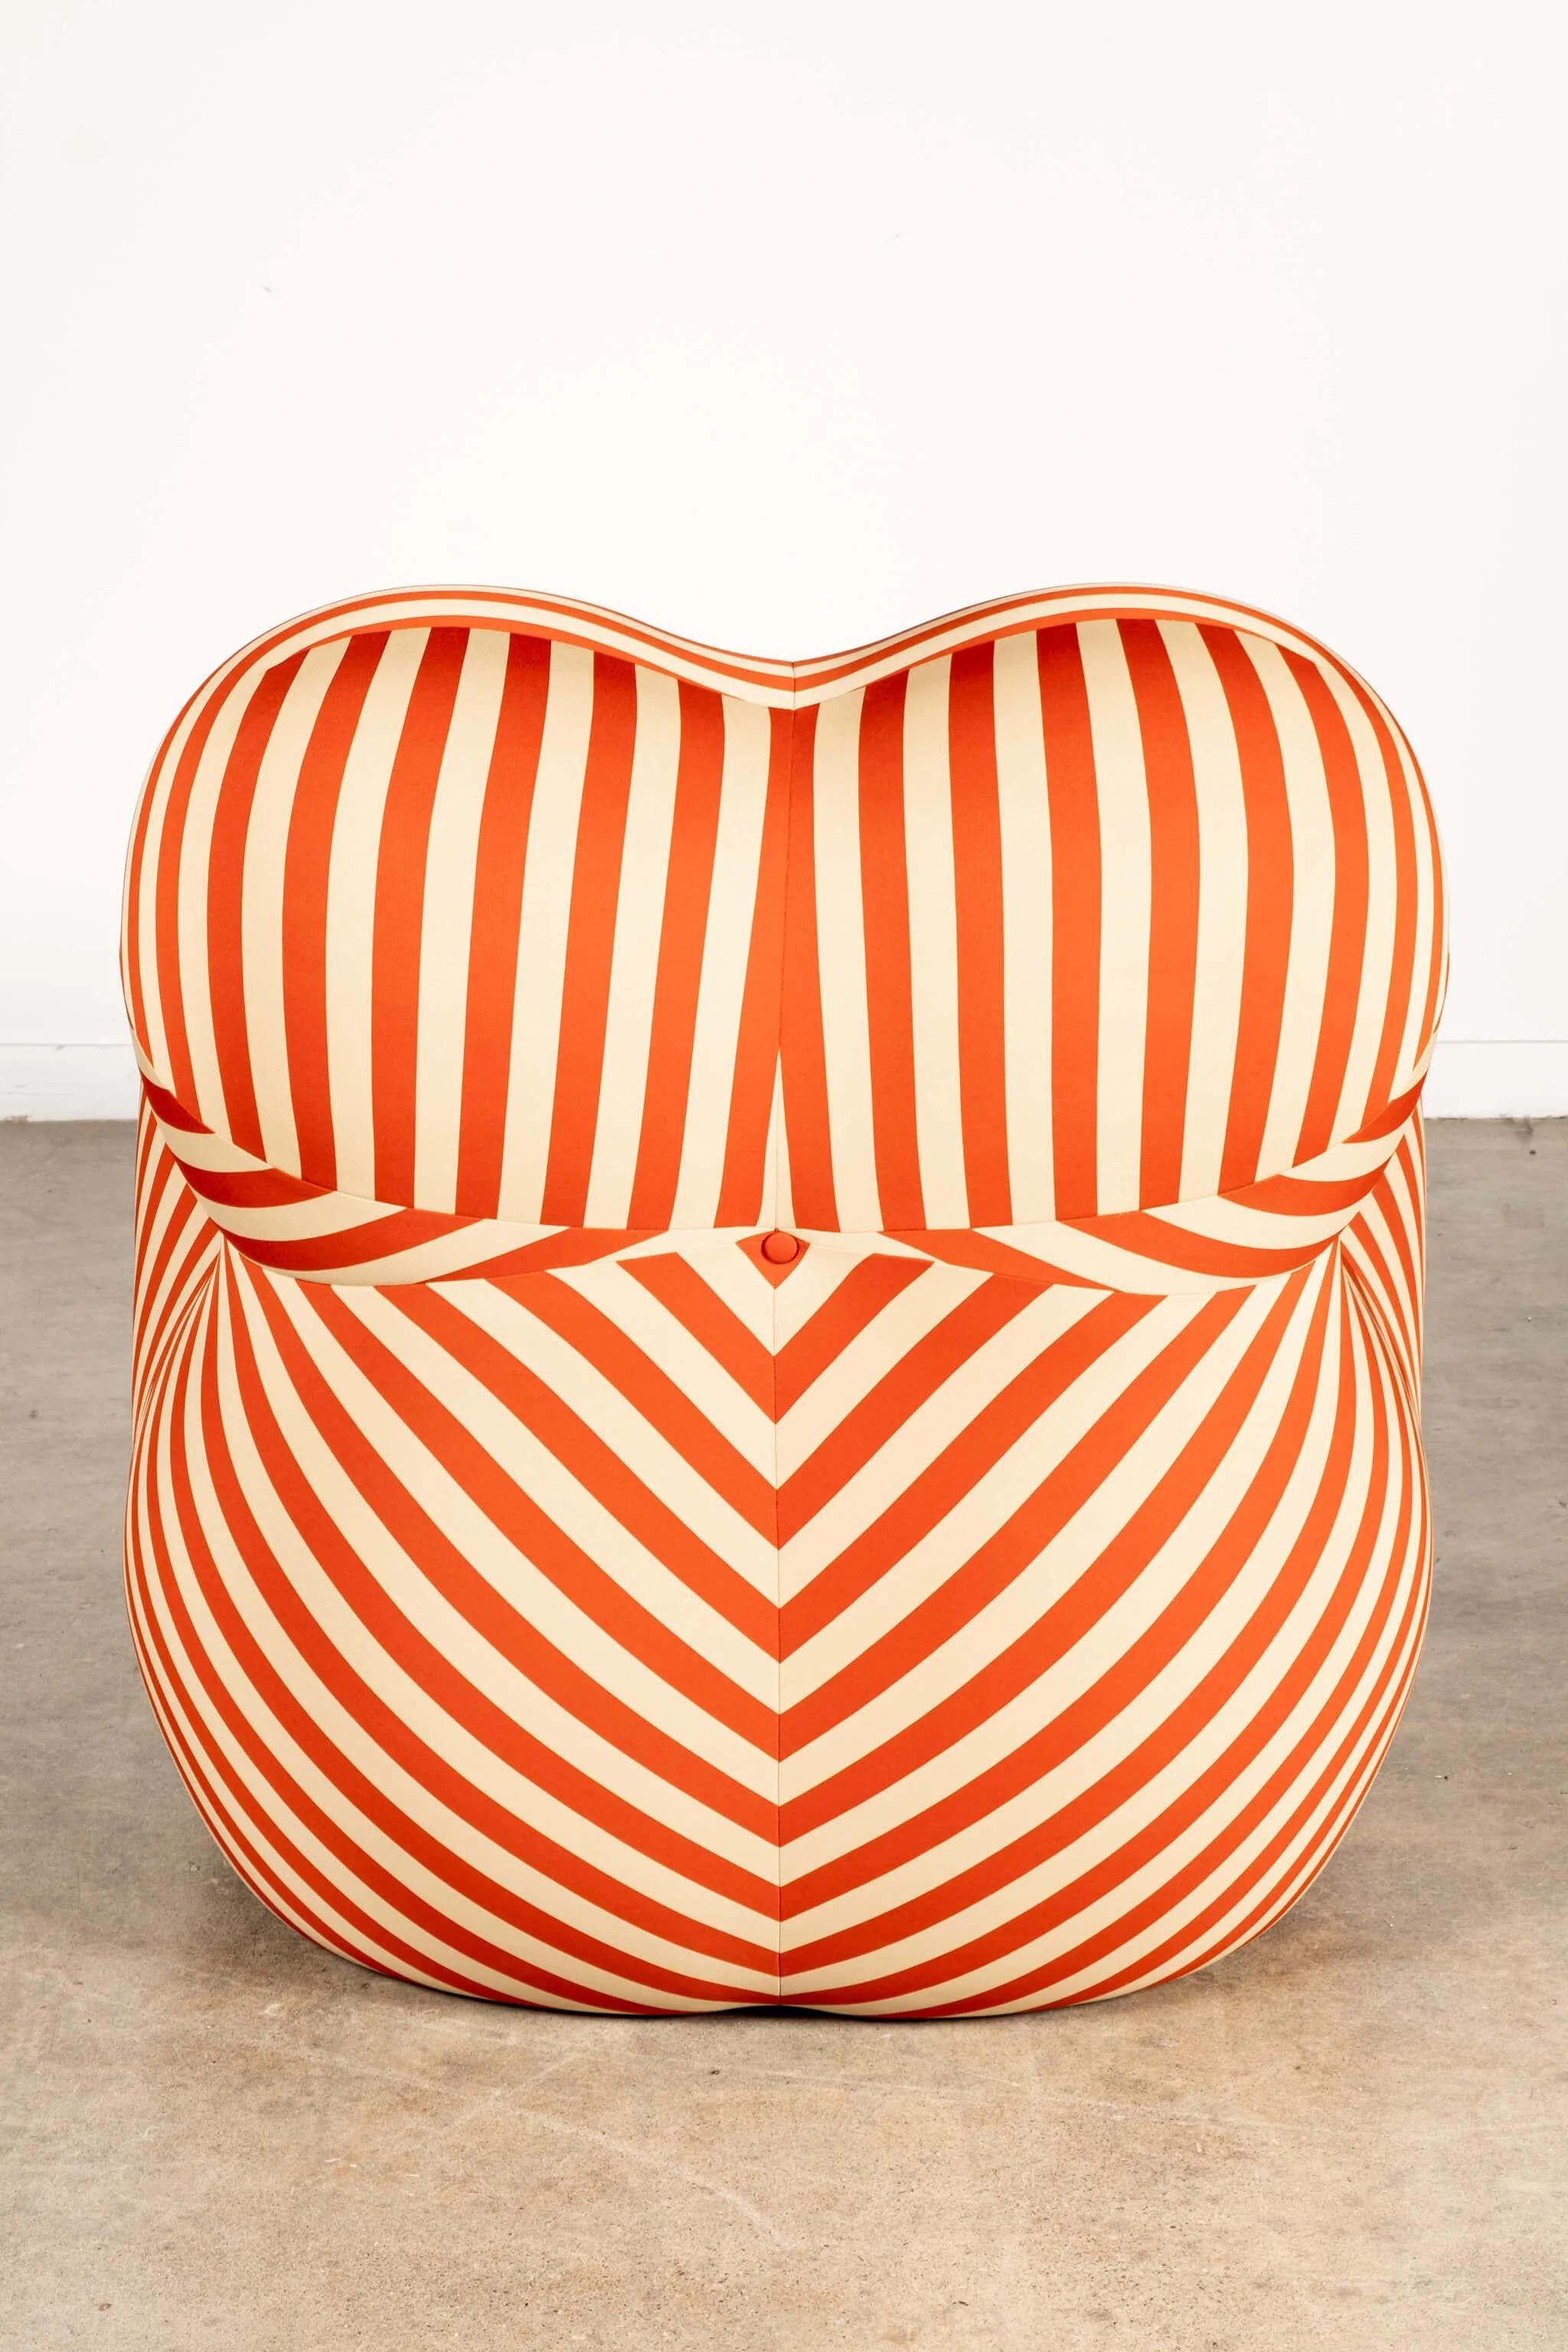 B&B Italia 'La Mamma' Up 5/6 Lounge Chair & Ottoman, Red Stripe by Gaetano Pesce For Sale 4